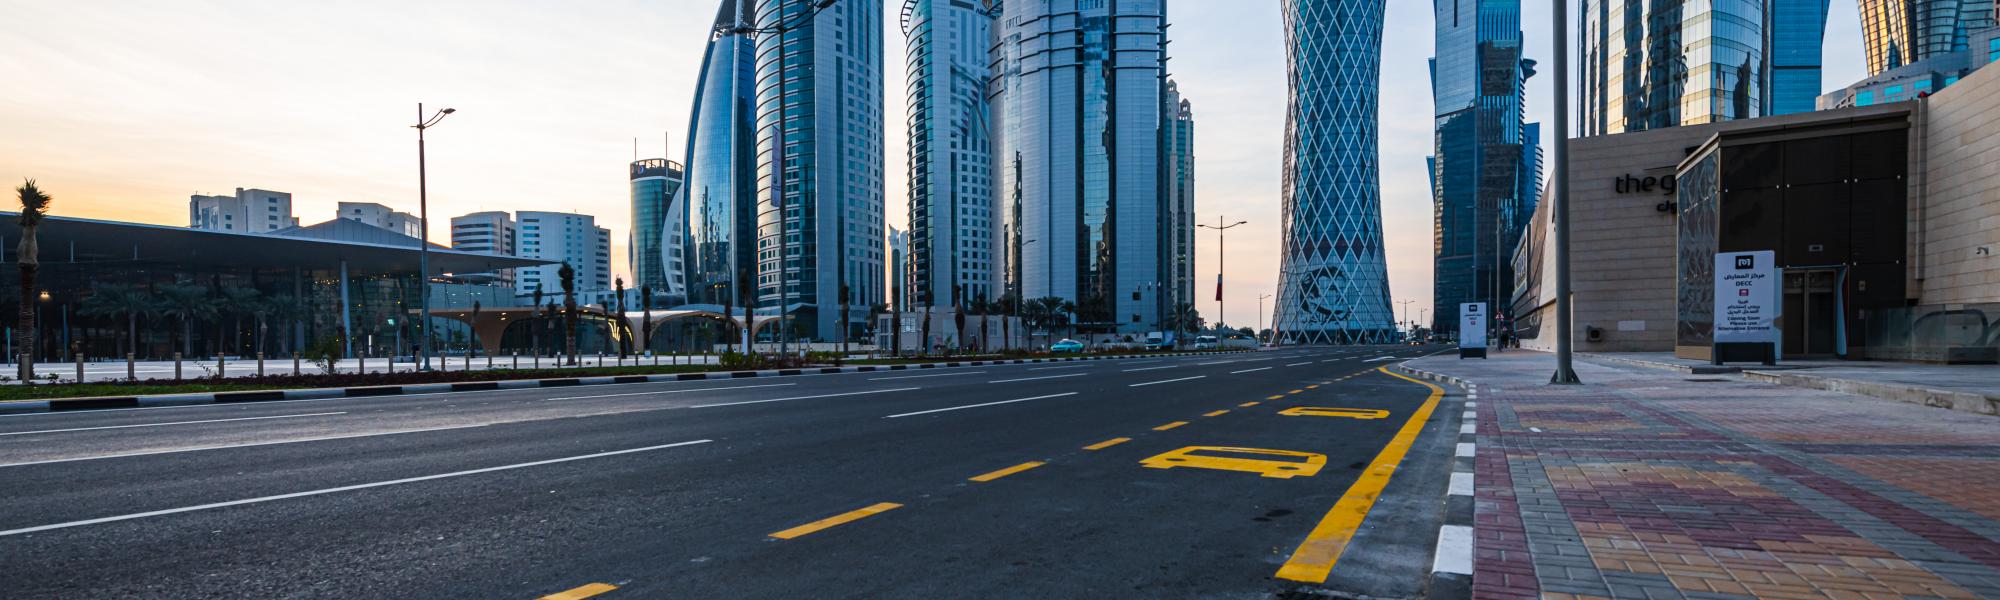 Катар вместе с IRU изучает возможности реформирования транспортного сектора